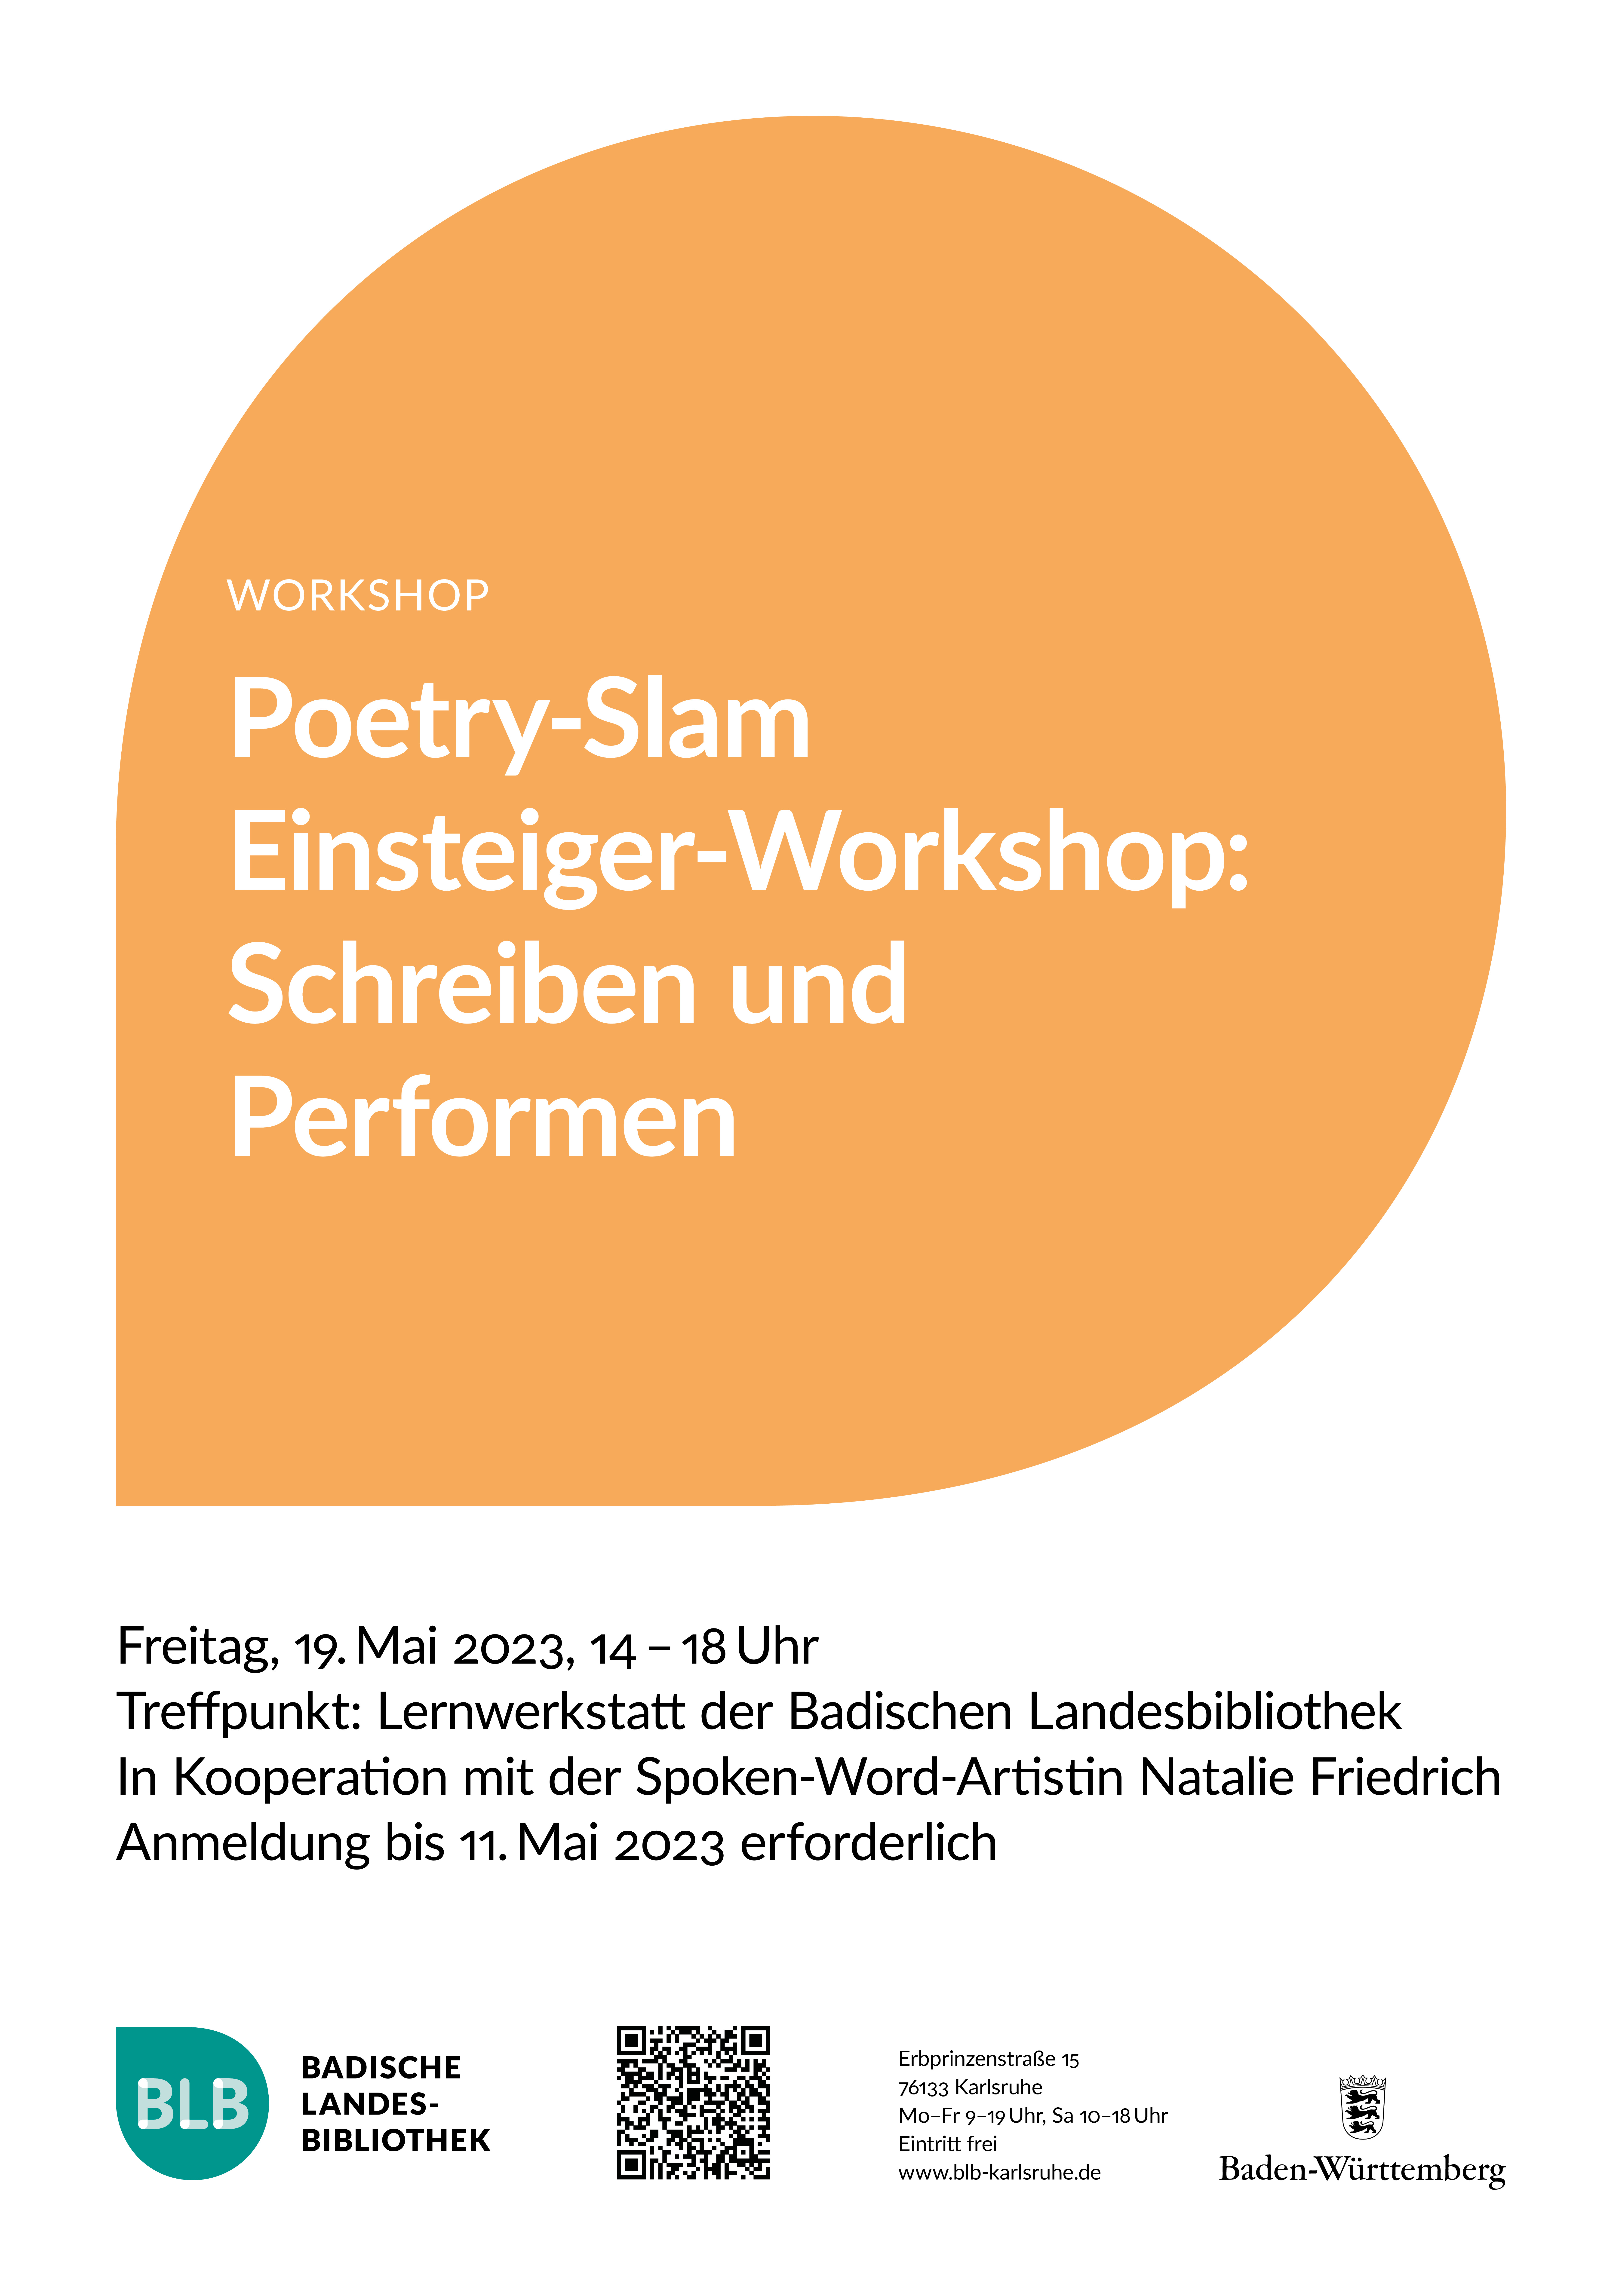 Zu sehen ist ein orangefarbenes Monogon mit der Aufschrift "Poetry-Slam Einsteiger Workshop: Schreiben und Performen". Dieser findet am Freitag, den 19. Mai 2023 von 14-18 Uhr statt. 